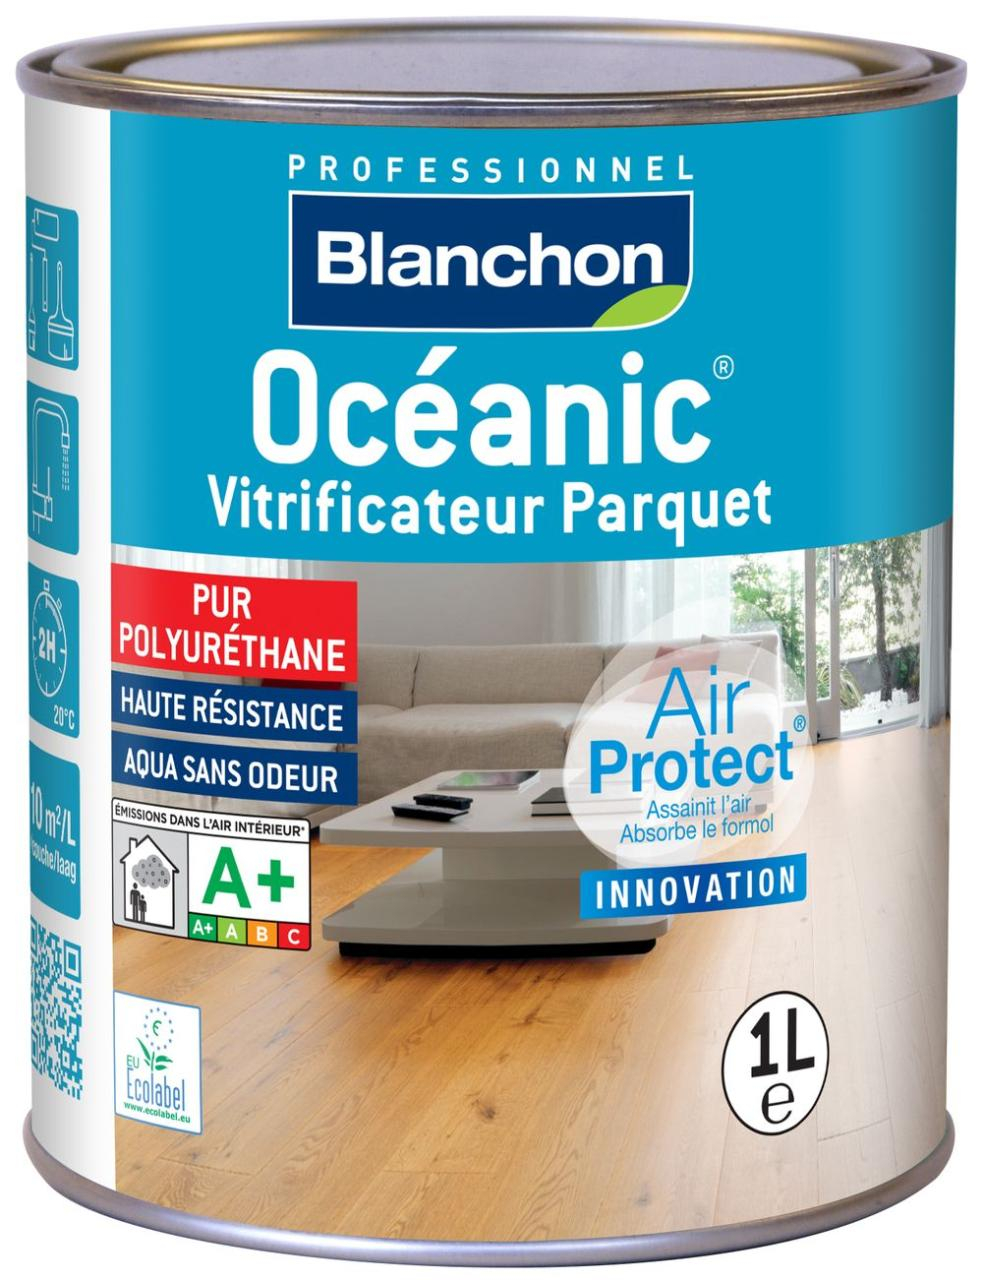 vitrificateur-parquet-oceanic-1l-cire-naturel-blanchon-0